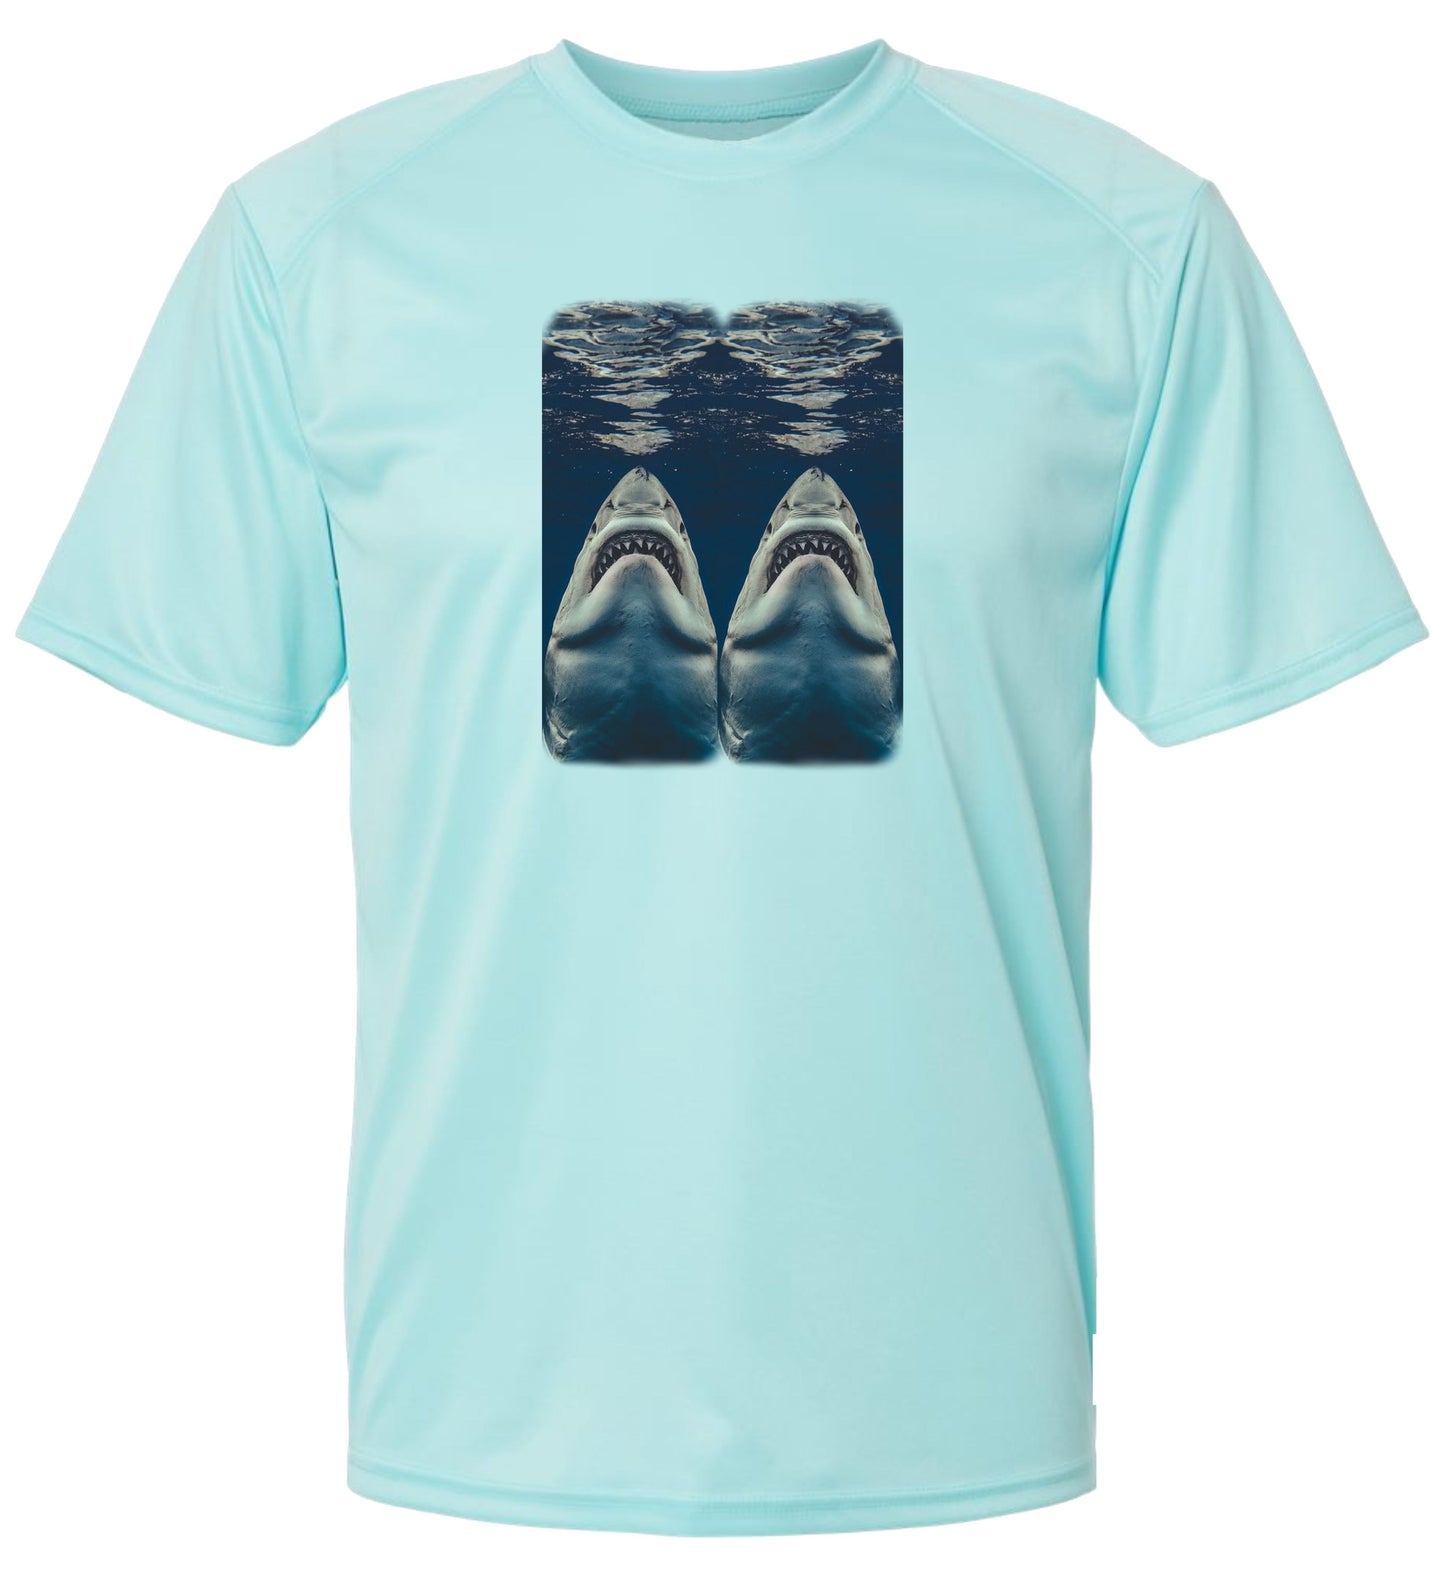 7 SM Two Sharks Short Sleeve UPF 50+ Shirt Fishing Shirt Lake Shirt Beach Shirt Deep Sea Fishing Shirt Outdoor Shirt